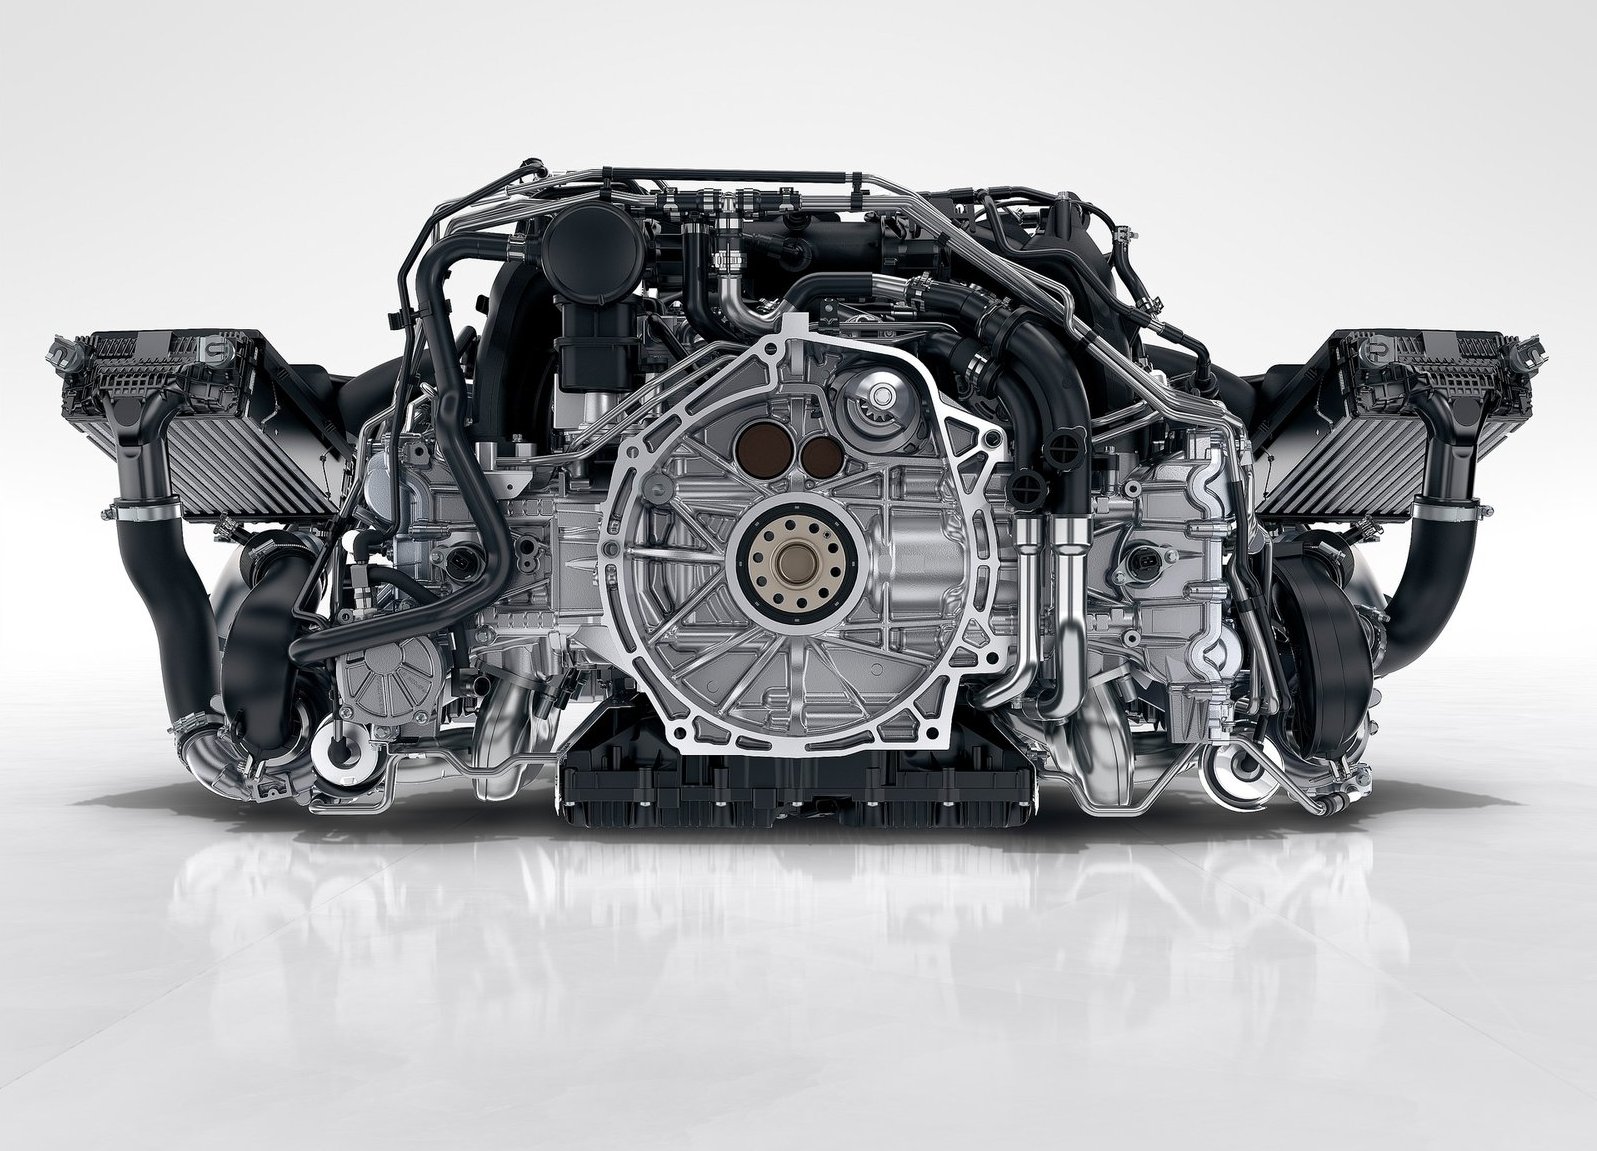 3.0升水平對臥六缸引擎外掛兩顆渦輪增壓器，動力輸出更強大，也更環保。